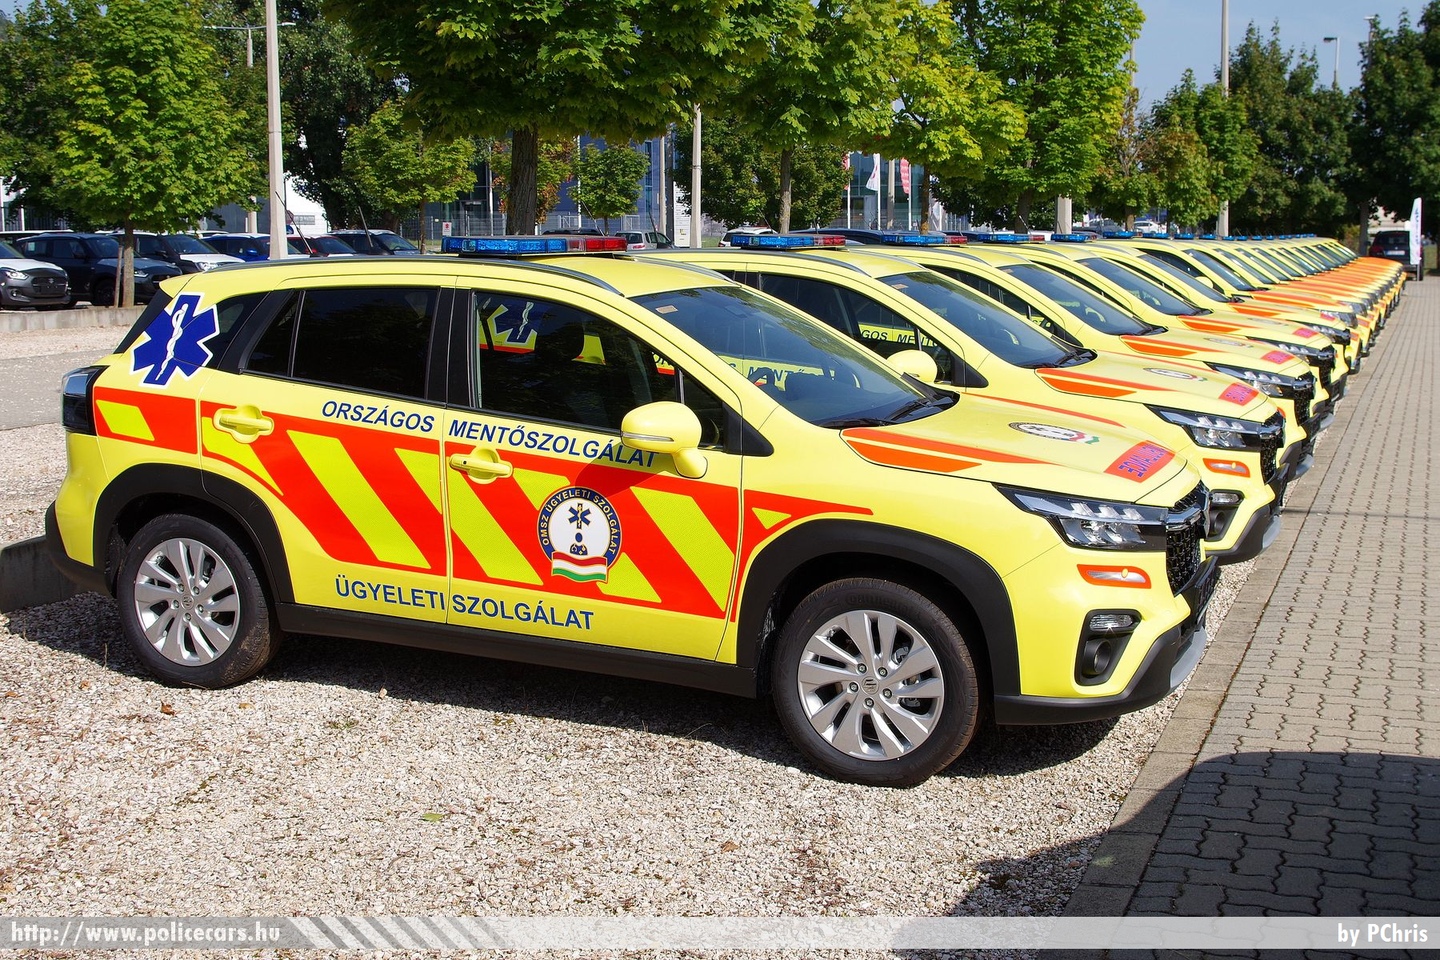 Suzuki S-Cross, Országos Mentőszolgálat, orvosi ügyelet, fotó: PChris
Keywords: mentő magyar Magyarország mentőautó OMSZ ambulance Hungary hungarian